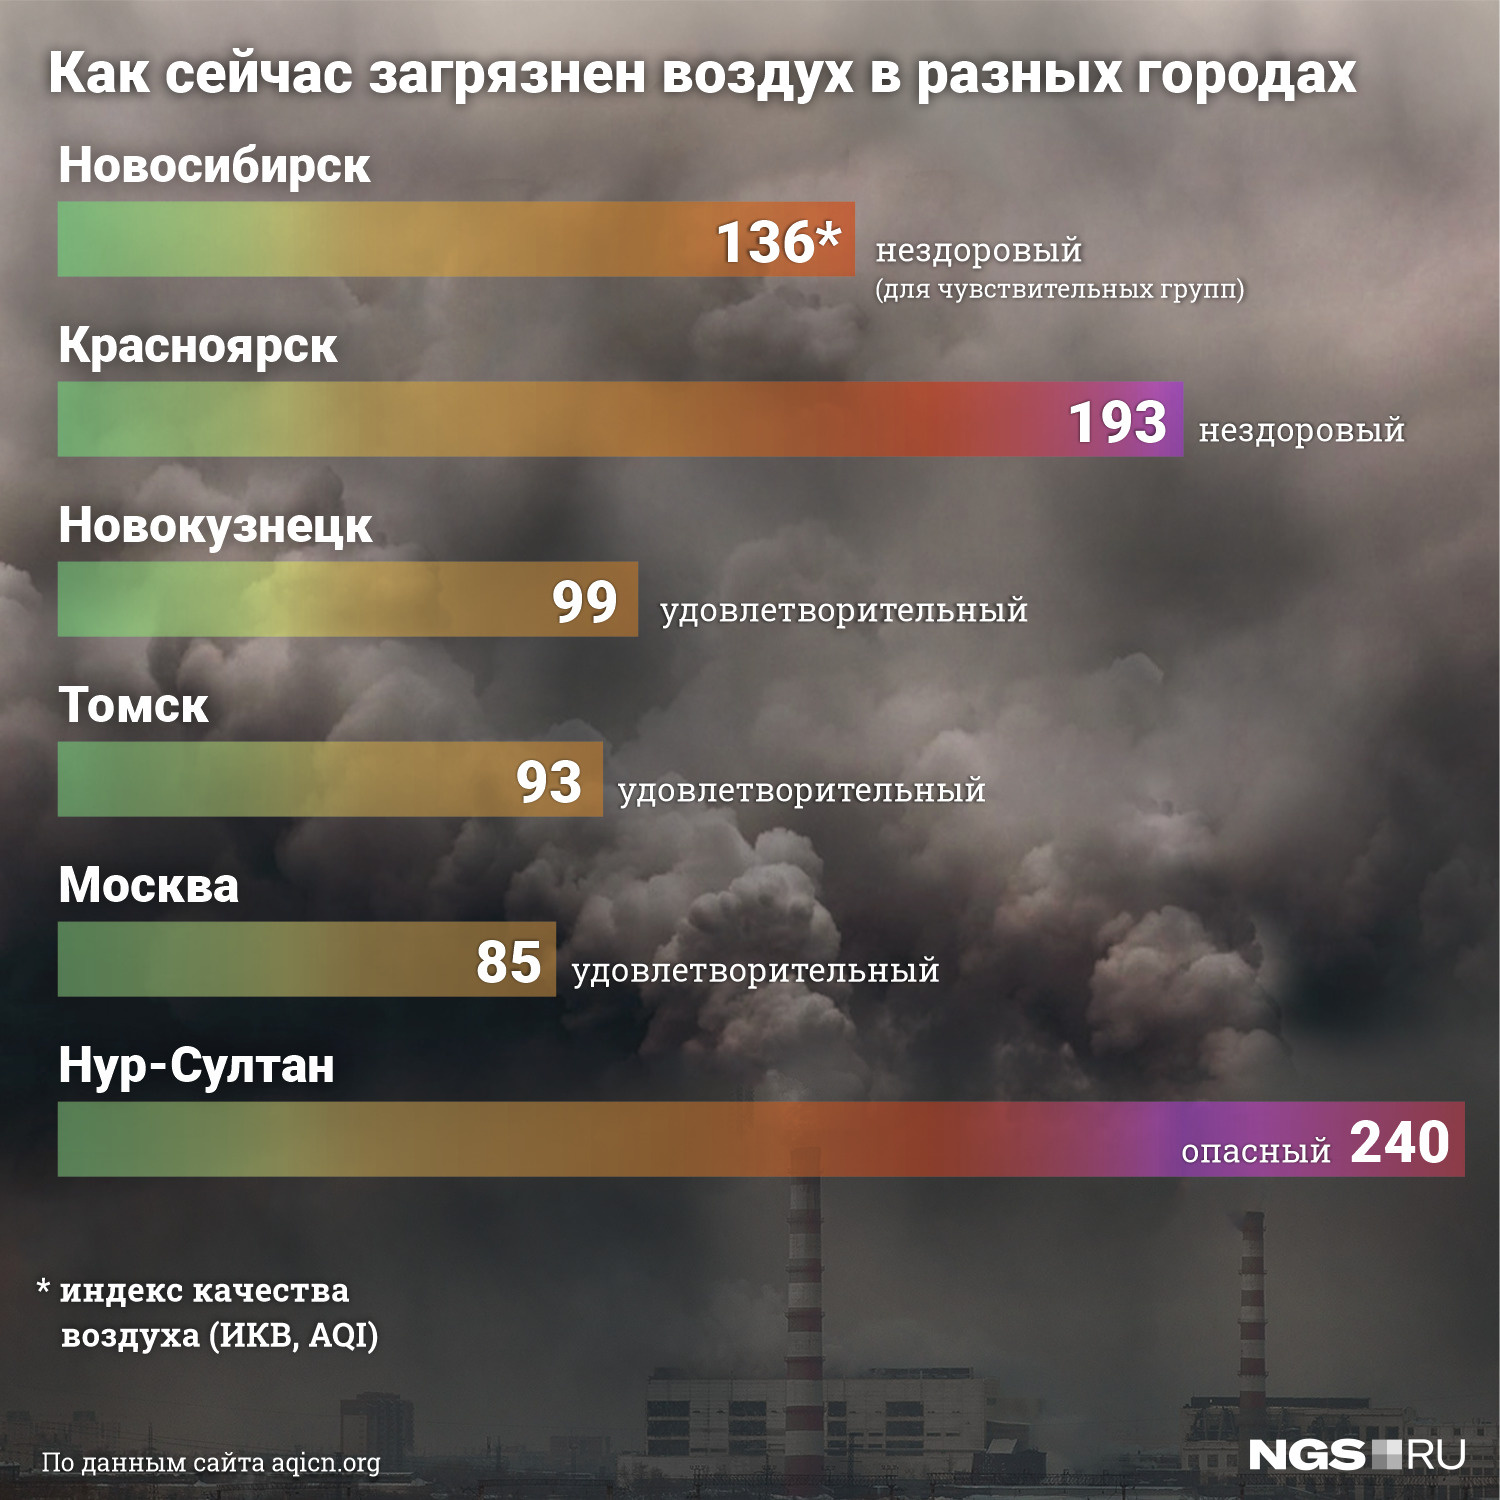 Новосибирск уступает Красноярску и Нур-Султану, где индекс достиг опасной отметки